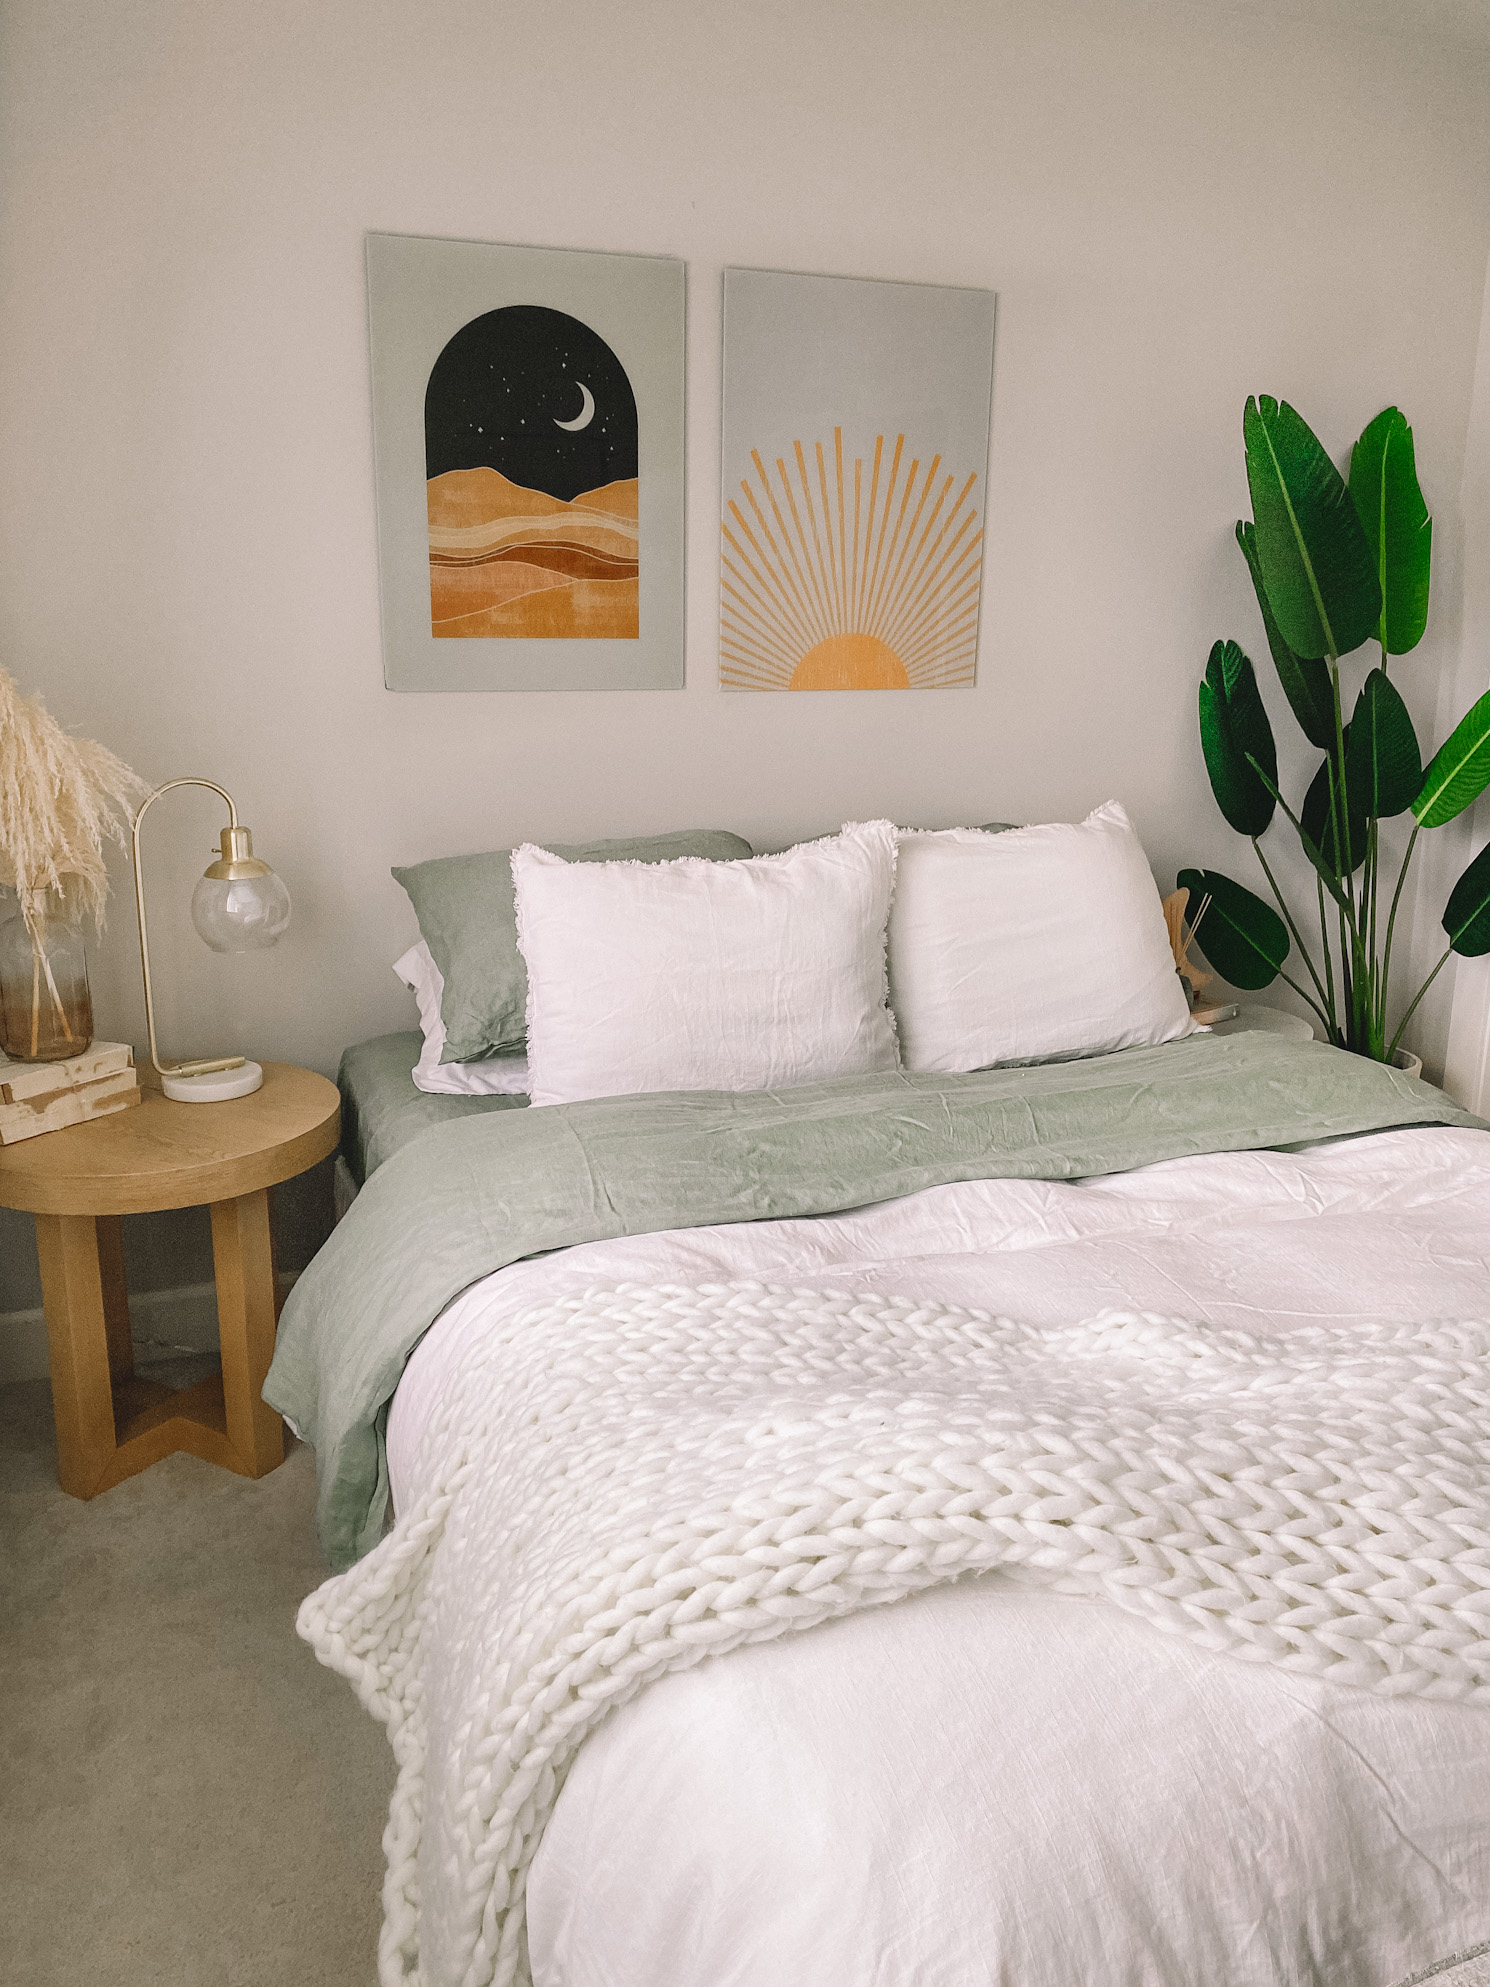 https://sabrinatan.co/wp-content/uploads/2020/10/Casaluna-Target-Best-Affordable-Linen-Bedding-Best-Linen-Duvet-9.jpg